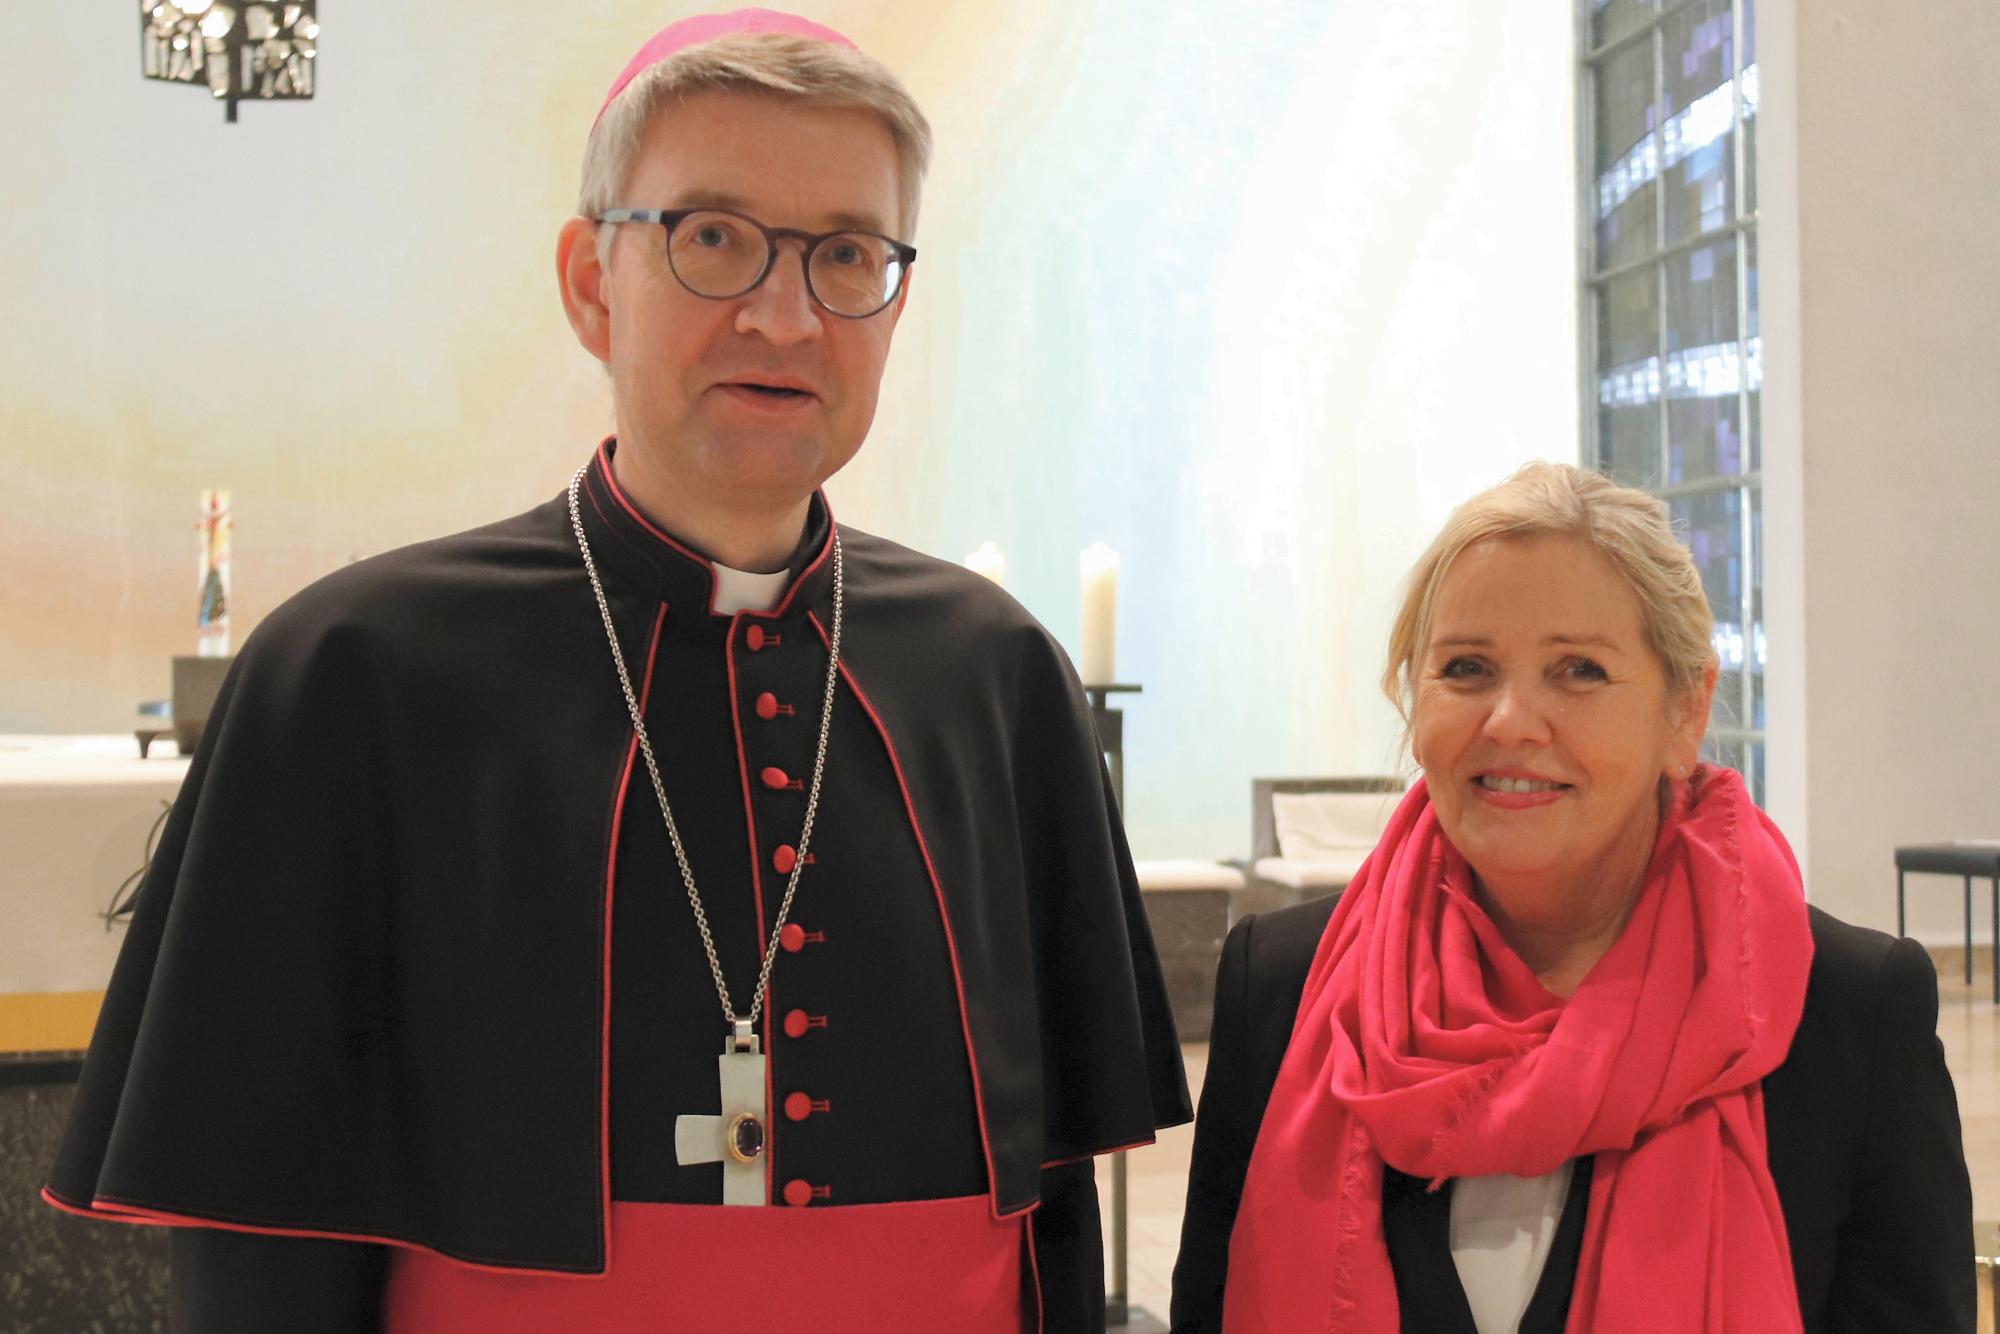 Offenbach, 29.1.2020: Bischof Peter Kohlgraf und Marie-Luise Trocholepczy, die scheidende Leiterin der Marienschule in Offenbach